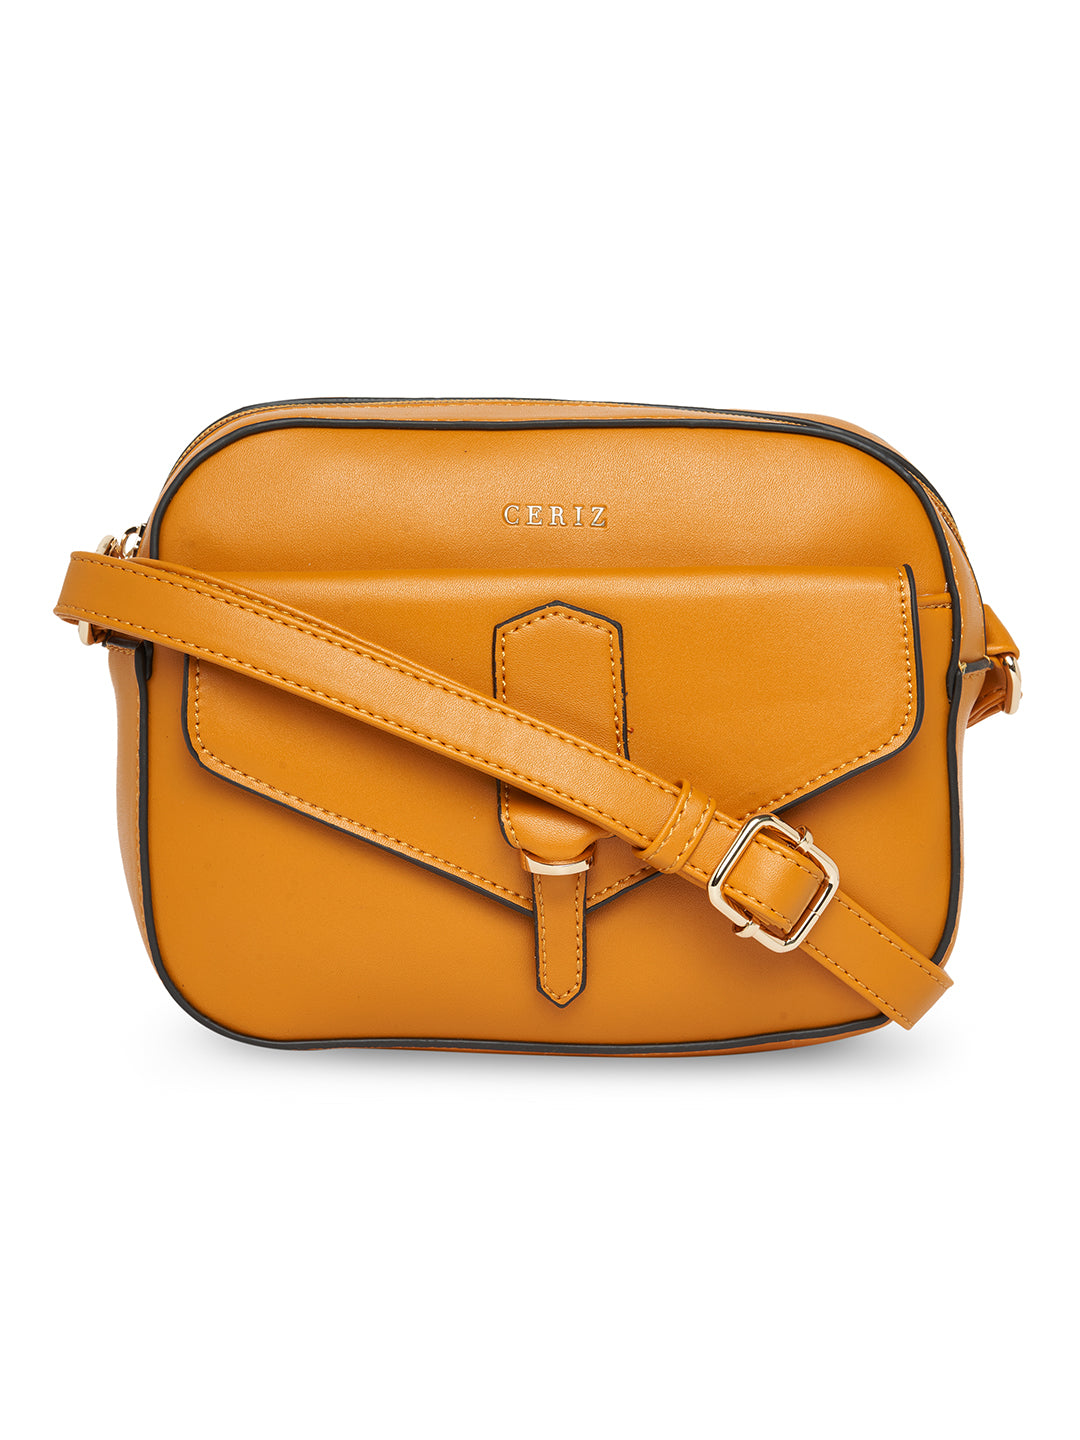 Buy Ceriz Solid Medium Handbag for Women at Amazon.in